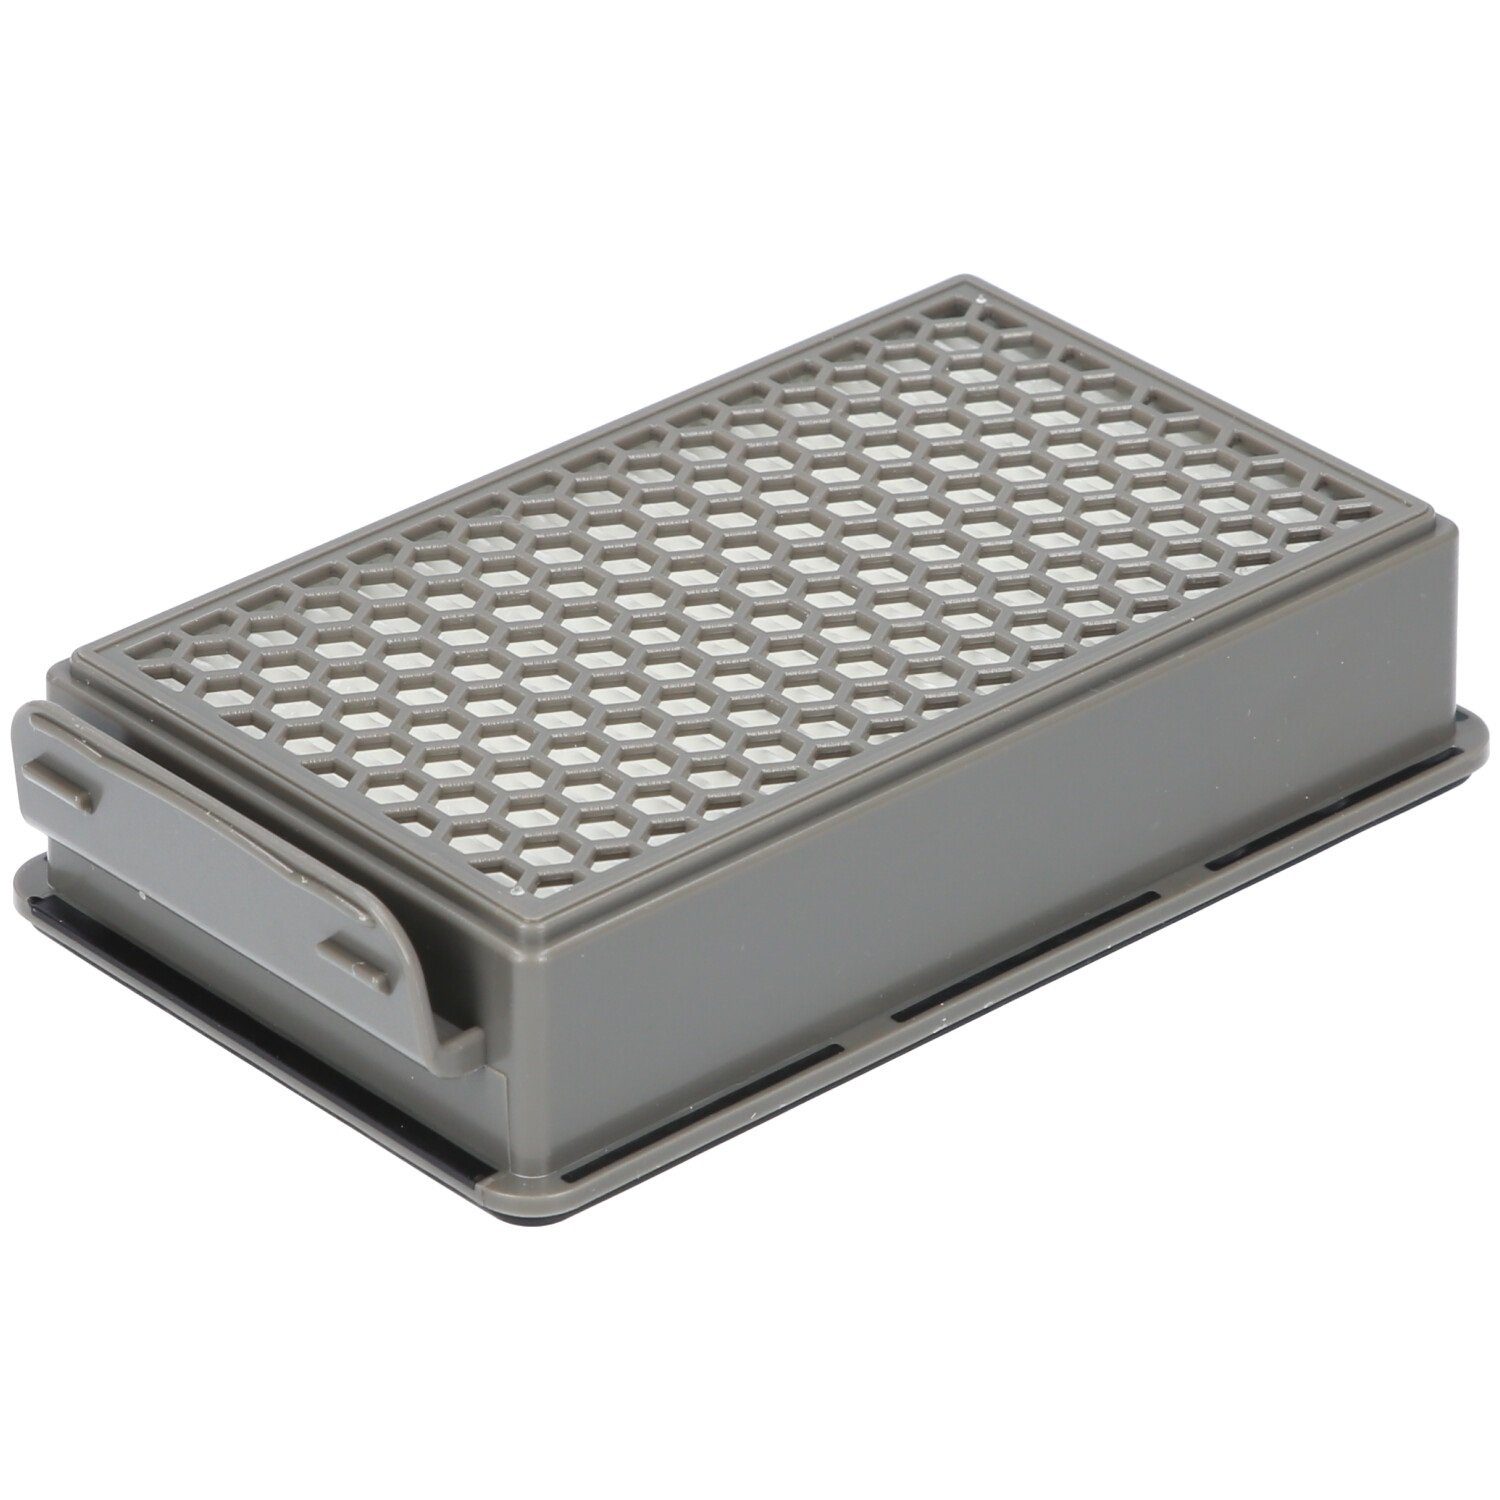 Rundfilter, Samurai ZR005901 1x für 1x Alternative Filter-Set geeignet SG3751WA für Staubsauger, McFilter Filterkassette,